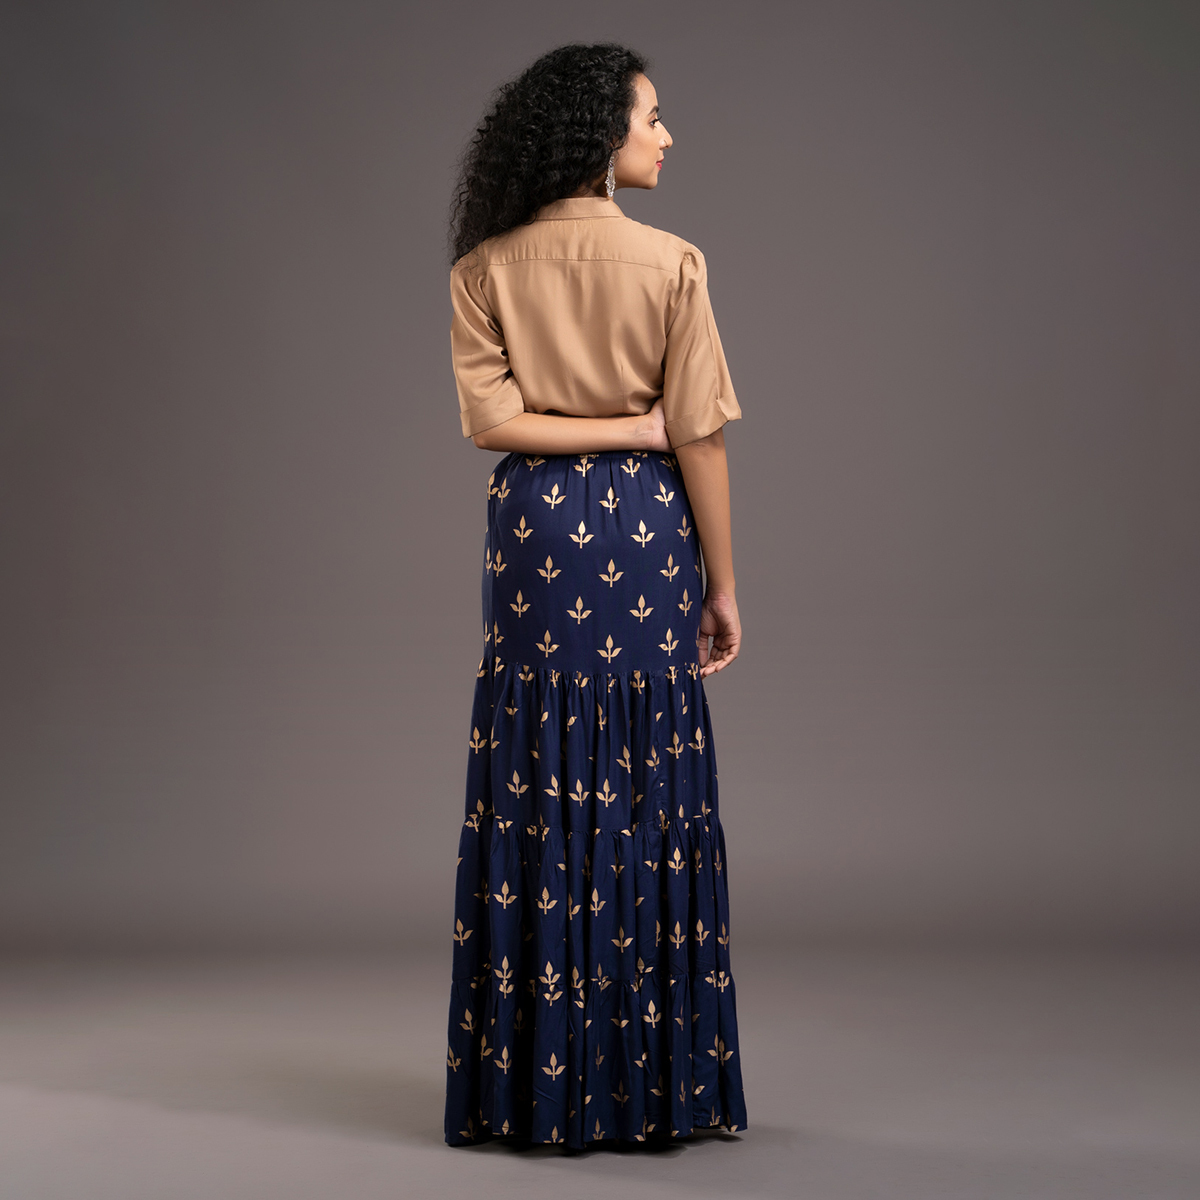 Zella Solid Color Elbow Sleeve Shirt & Foil Printed Tyre Skirt Set - Golden Beige & Navy blue